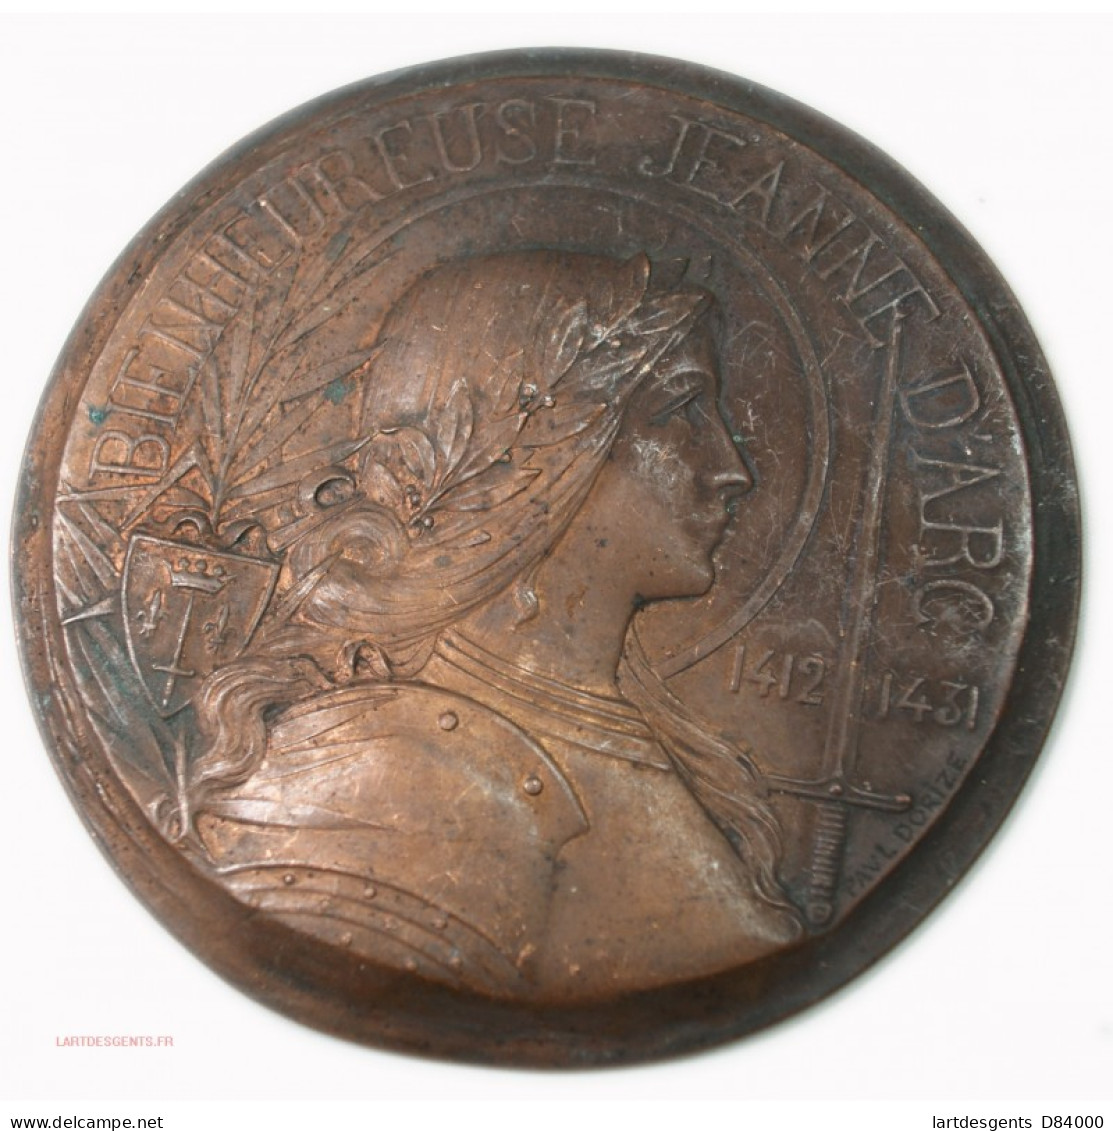 Rare Médaille Uniface Bienheureuse Jeanne D'Arc 1412-1431 Par Paul DORIZE - Royal / Of Nobility